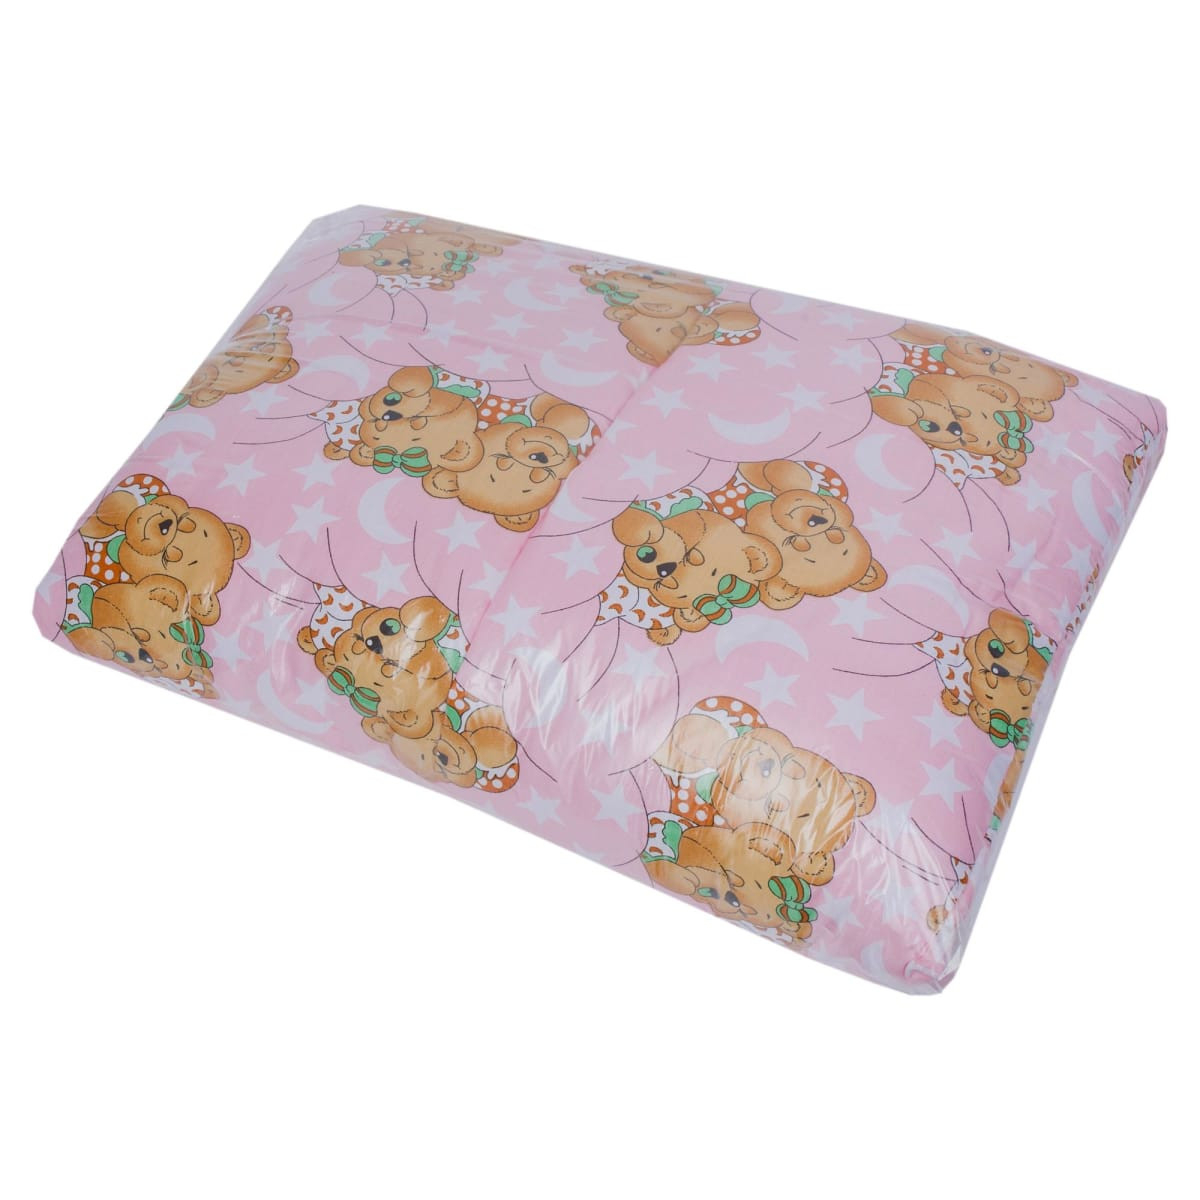 Детское одеяло Лёгкое Ниветта цвет: в ассортименте (110х140 см), размер 110х140 см